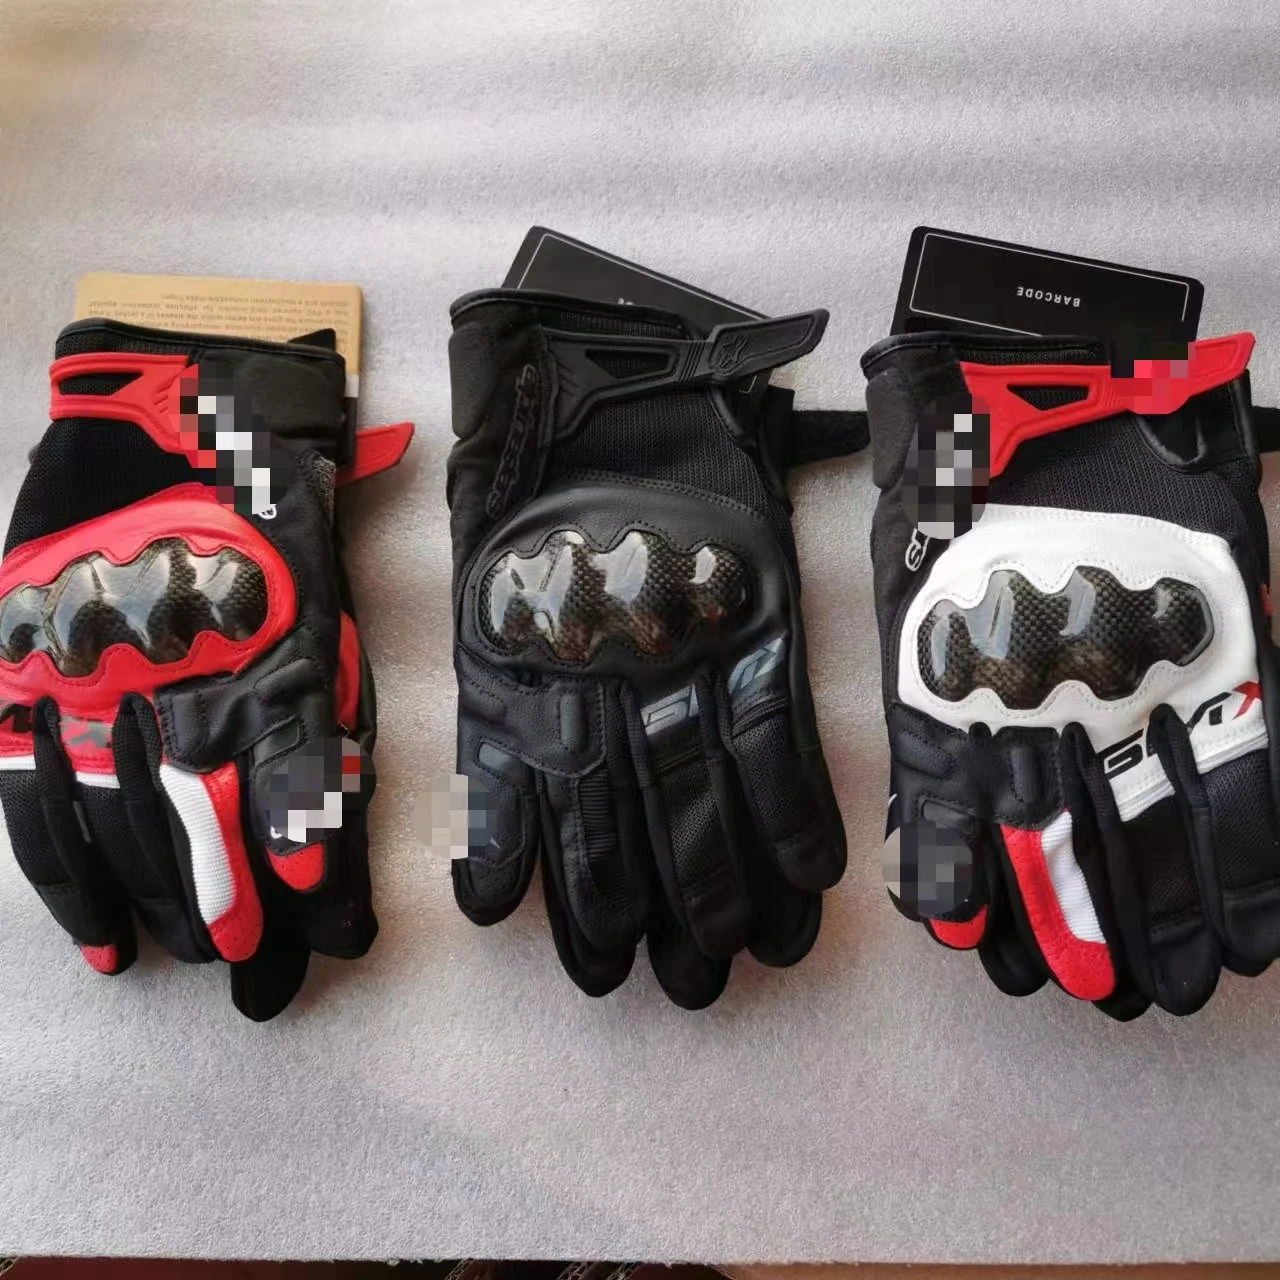 

Удобные мотоциклетные перчатки для верховой езды, защитные гоночные перчатки из чистой кожи и углеродного волокна для езды по бездорожью и скалолазания, удобное снаряжение